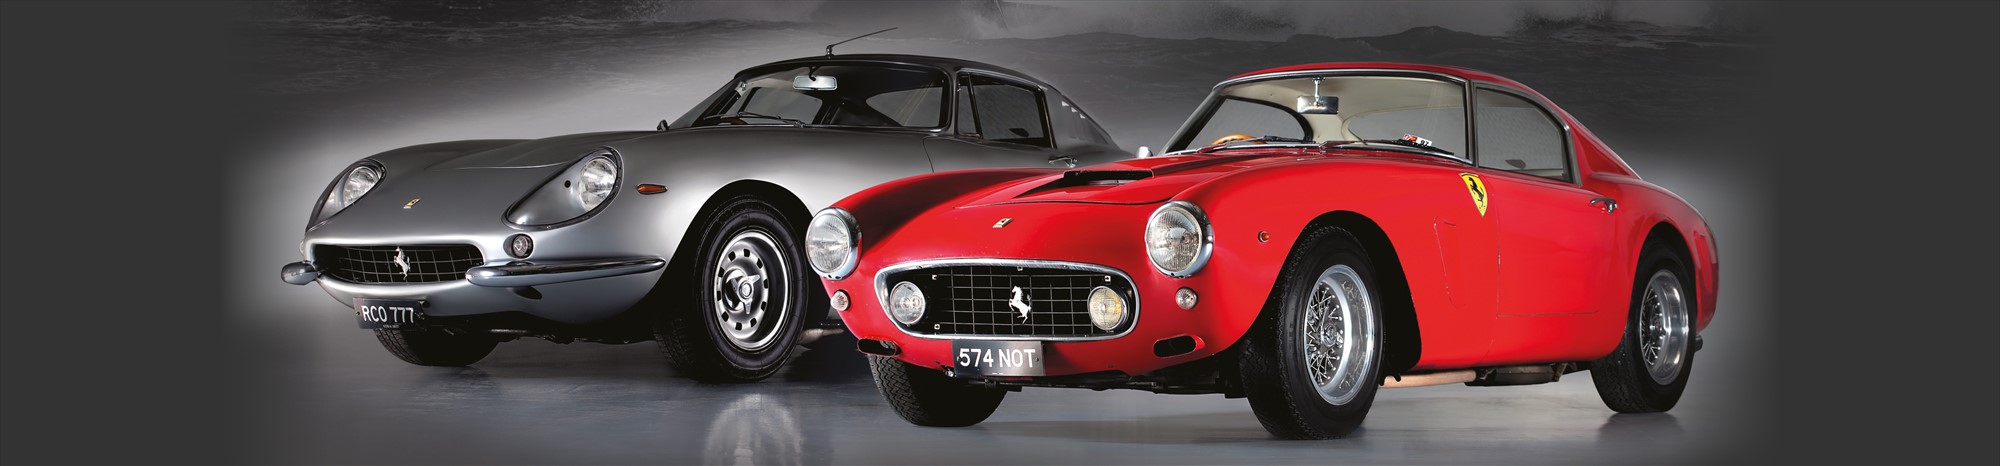 Classic Silver Ferrari and Classic Red Ferrari